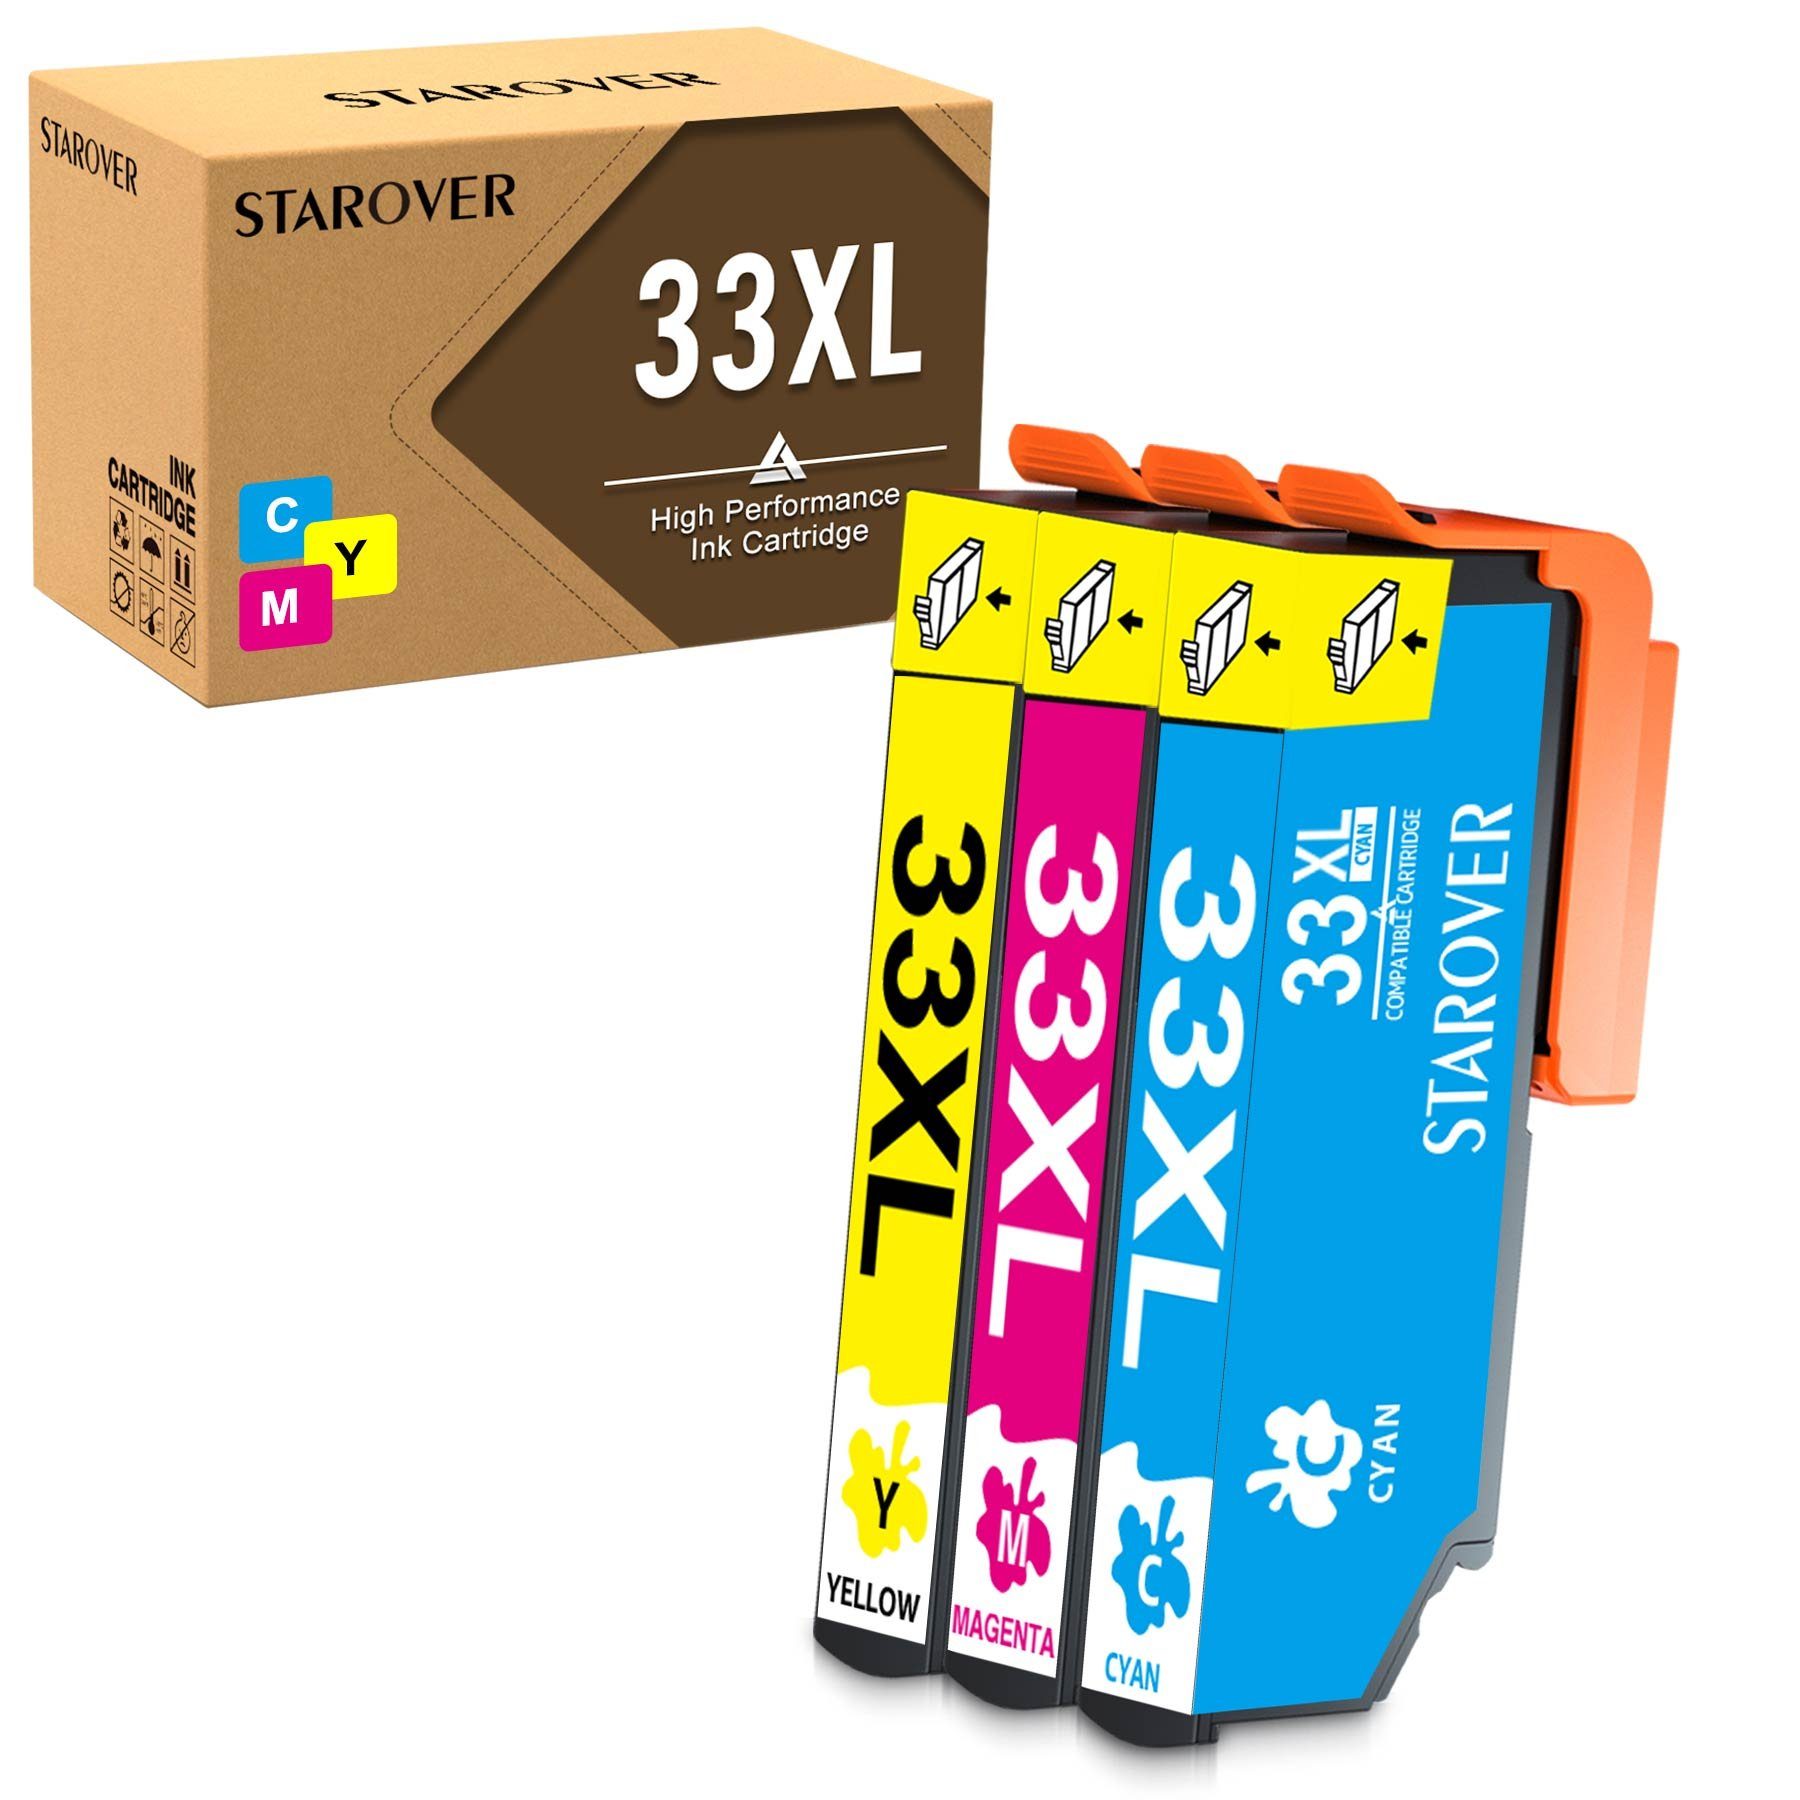 STAROVER 3er Multipack für EPSON 33 XL Cyan,Magenta,Gelb Tintenpatrone (Expression Premium XP-530 XP-540 XP-630 XP-635 XP-640, XP-645 XP-7100 XP-830 XP-900 Serie Drucker)